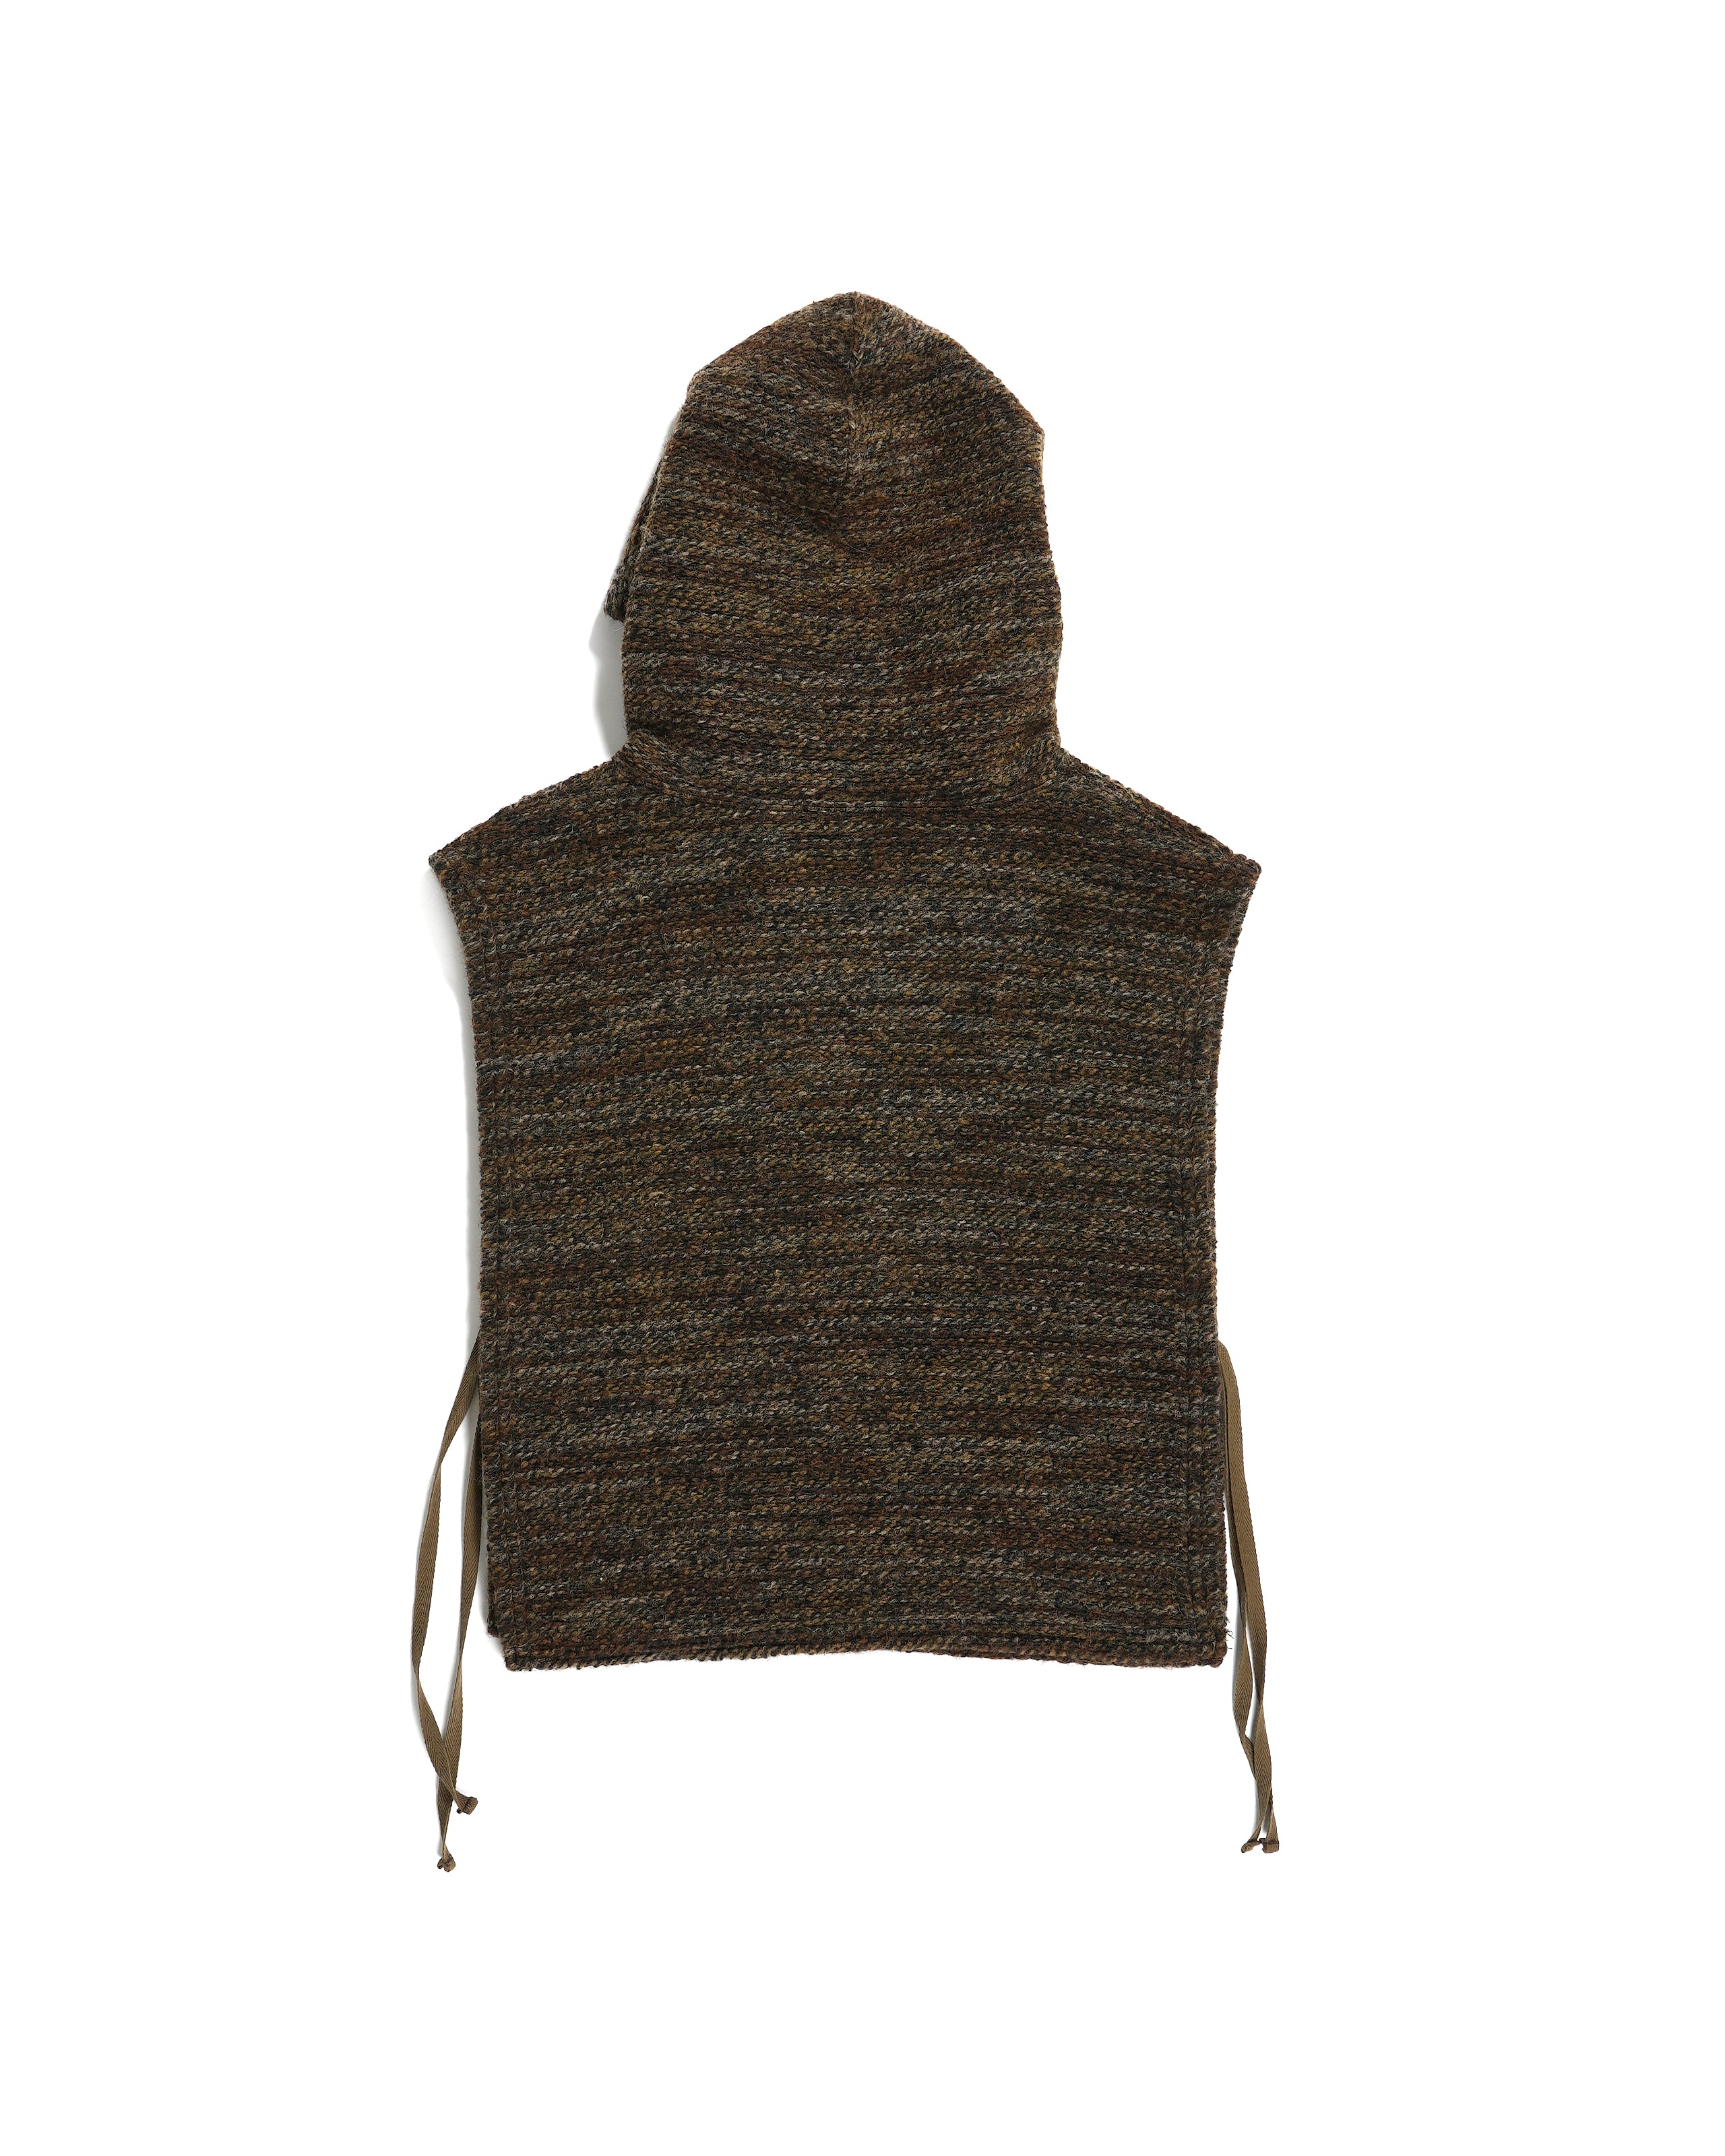 Hooded Interliner - Brown Poly Wool Melange Knit